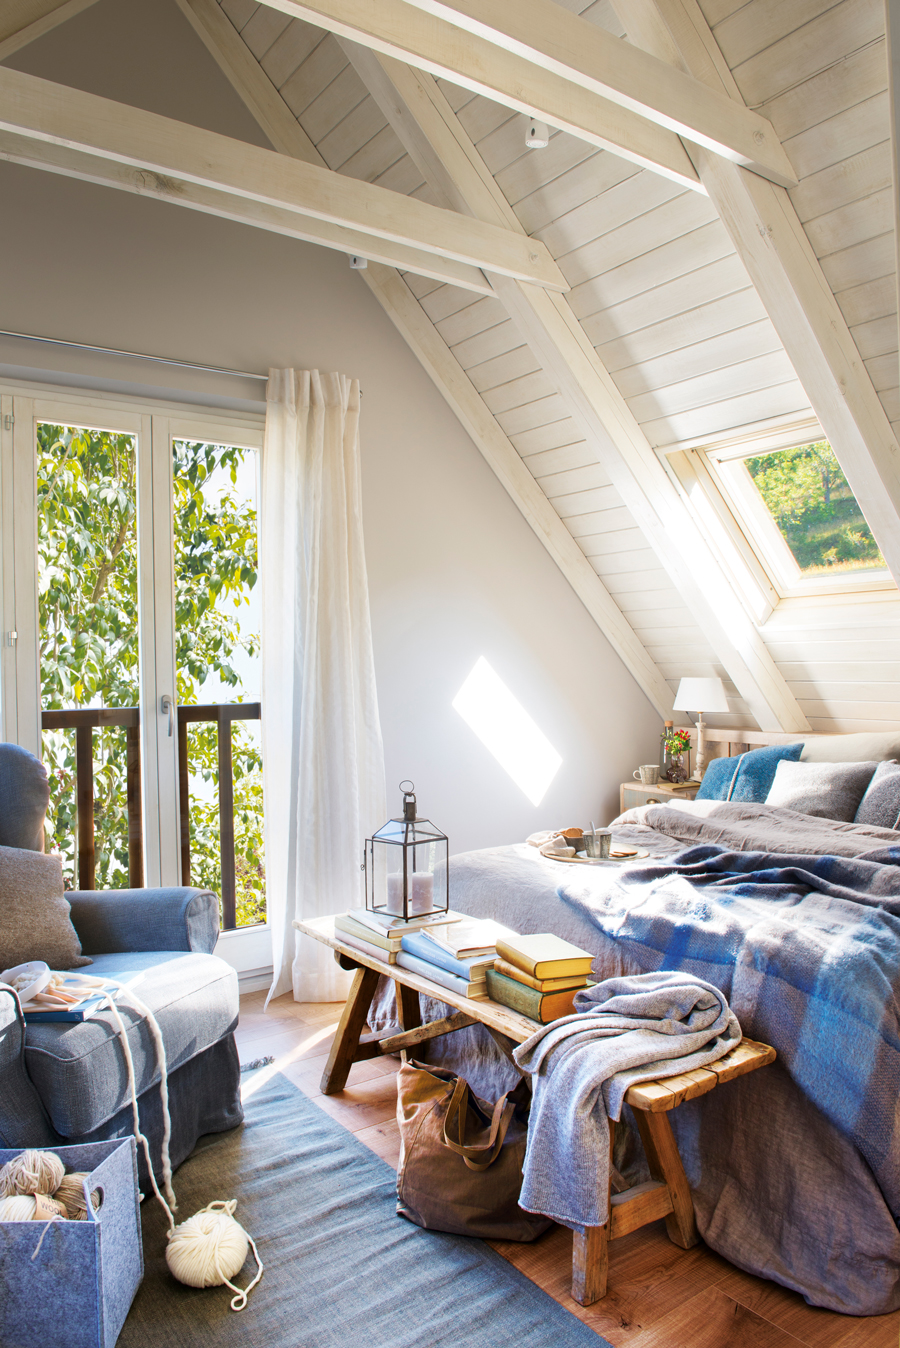 00442701. Dormitorio abuhardillado rústico con techos de madera en blanco, butaca gris y ropa de cama azul y gris 00442701